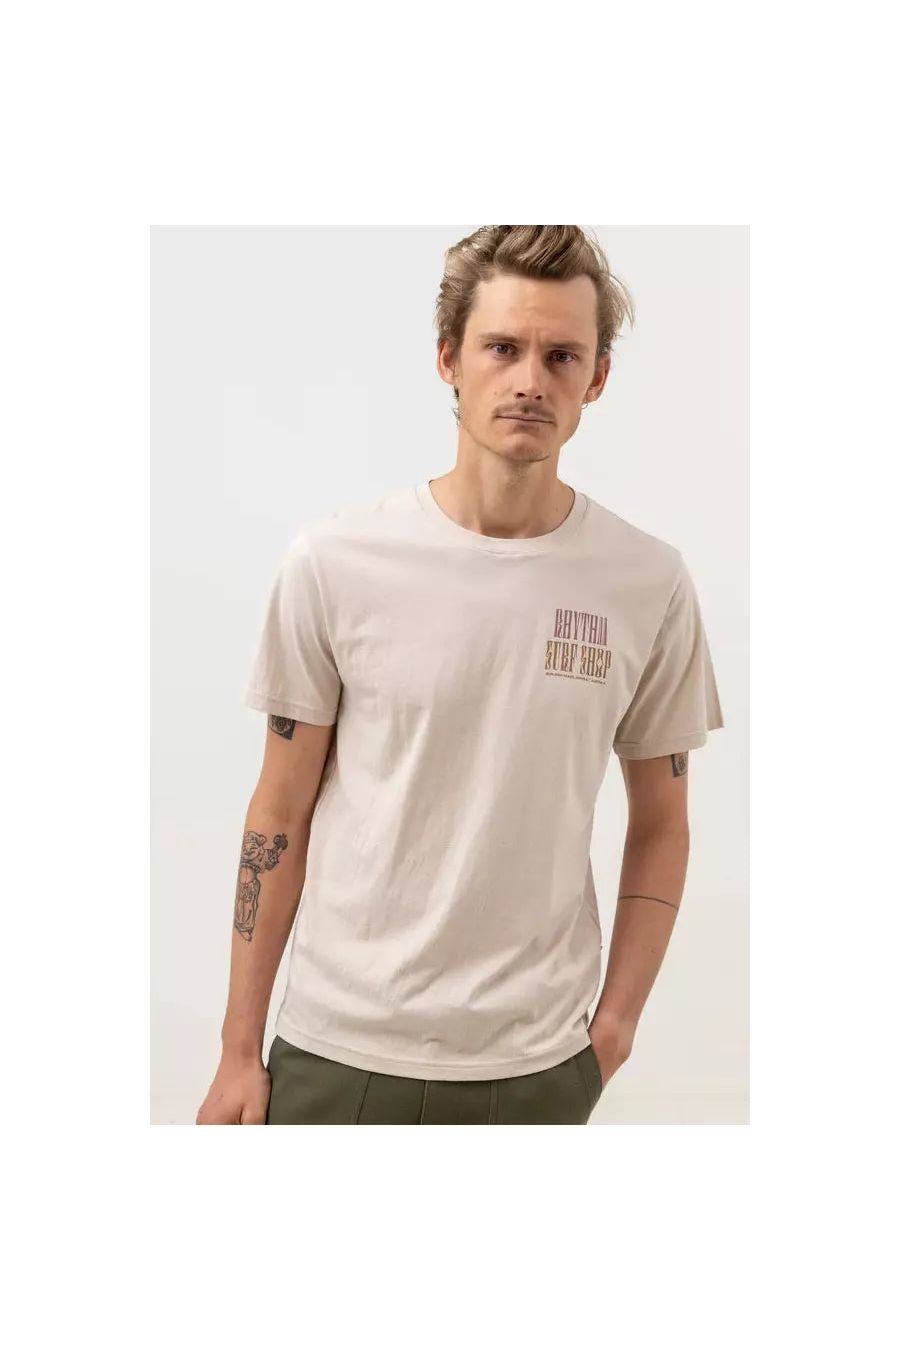 Rhythm Shop Short Sleeve T-Shirt